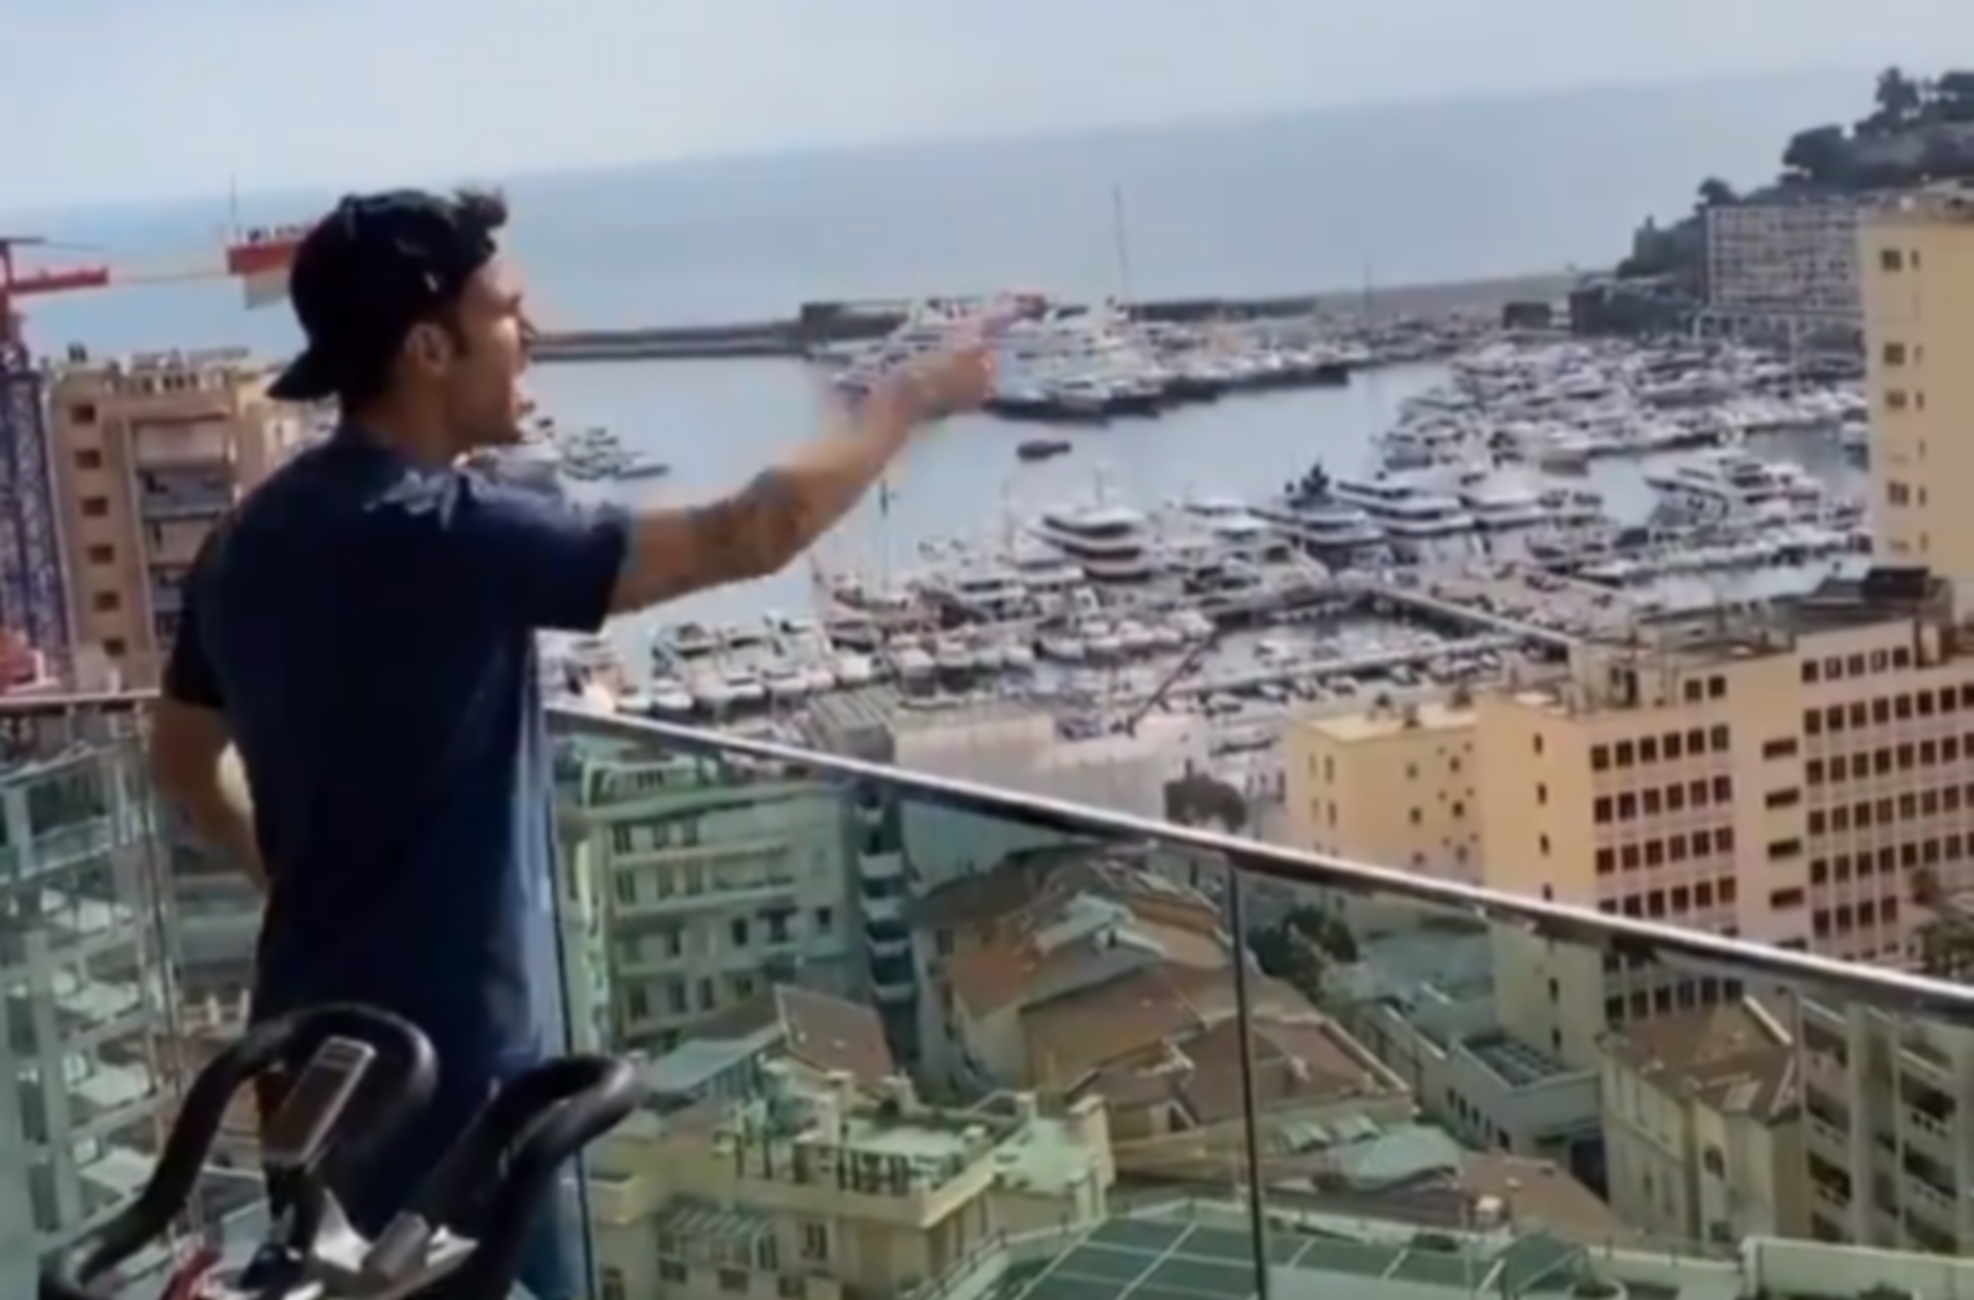 Κορονοϊός: Τρομερός Φάμπρεγκας στο μπαλκόνι! Φωνάζει “άντε γ@μ@θ@τε” στους γείτονες (video)